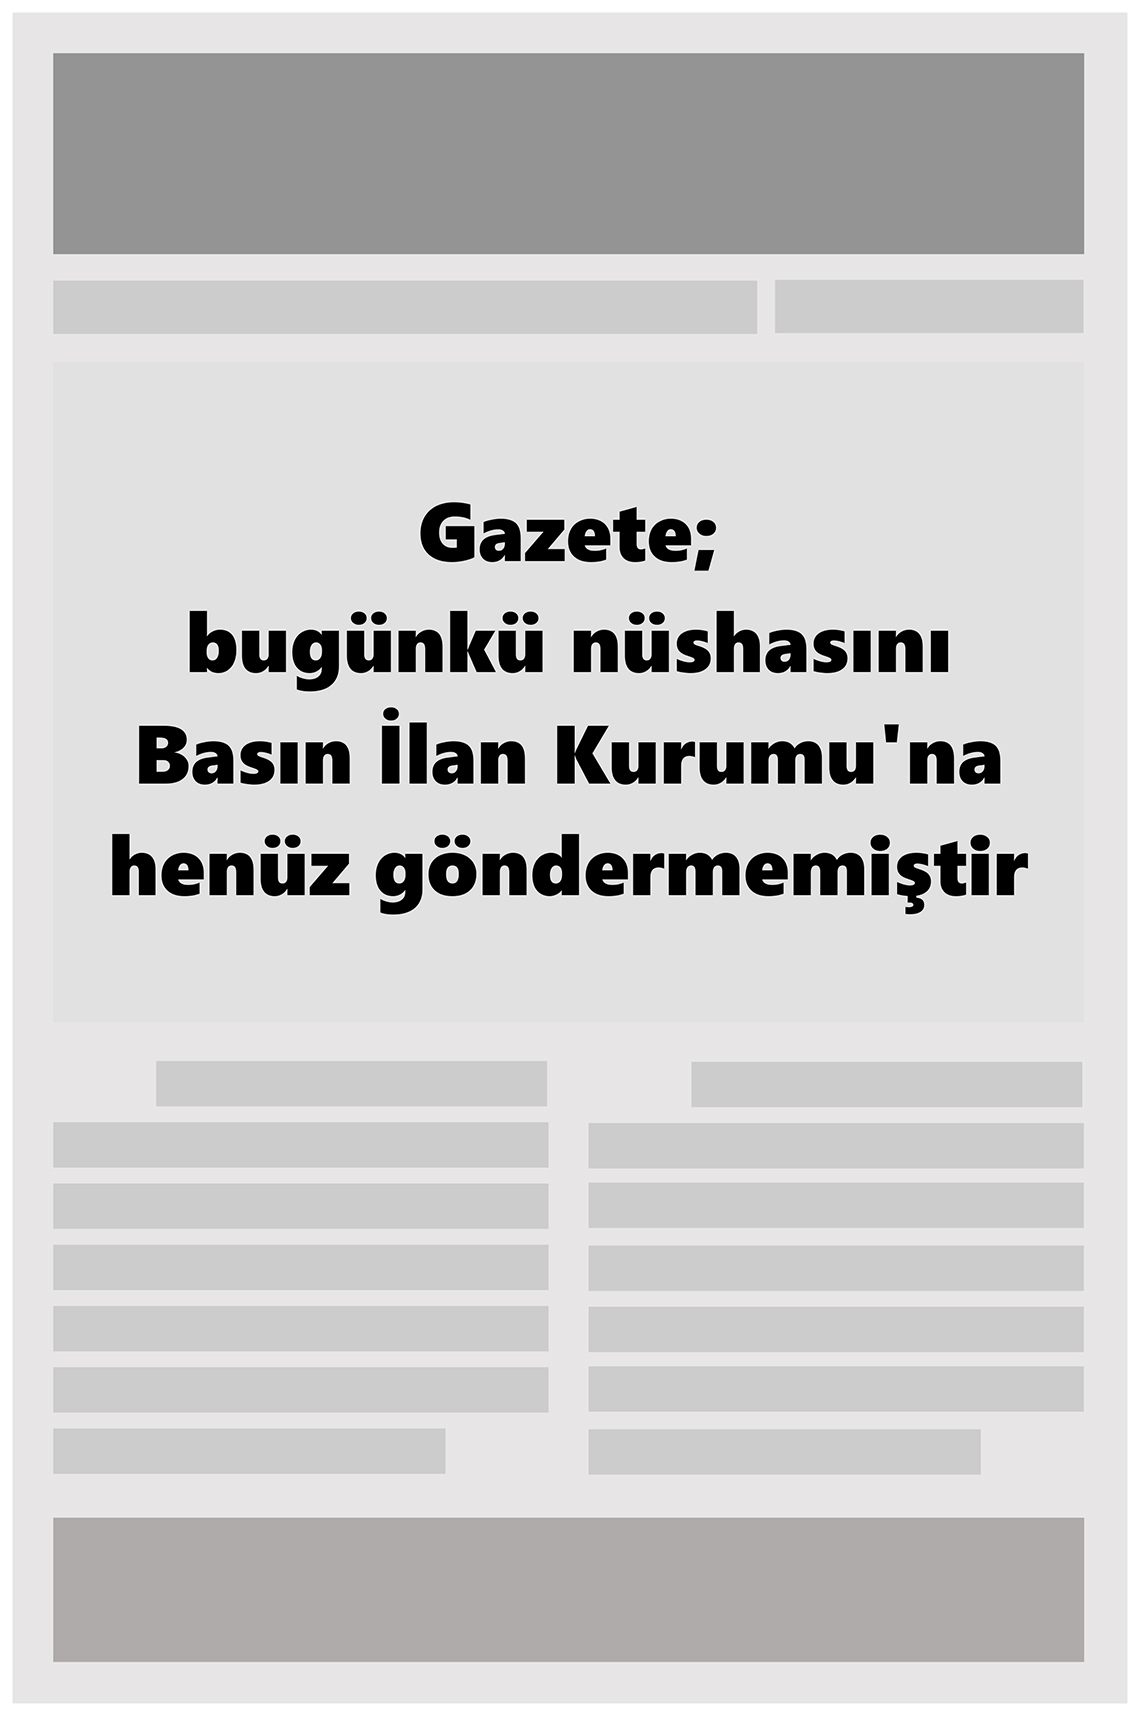 15 Ocak 2022 KASTAMONU AÇIKSÖZ GAZETESİ Gazete Manşeti